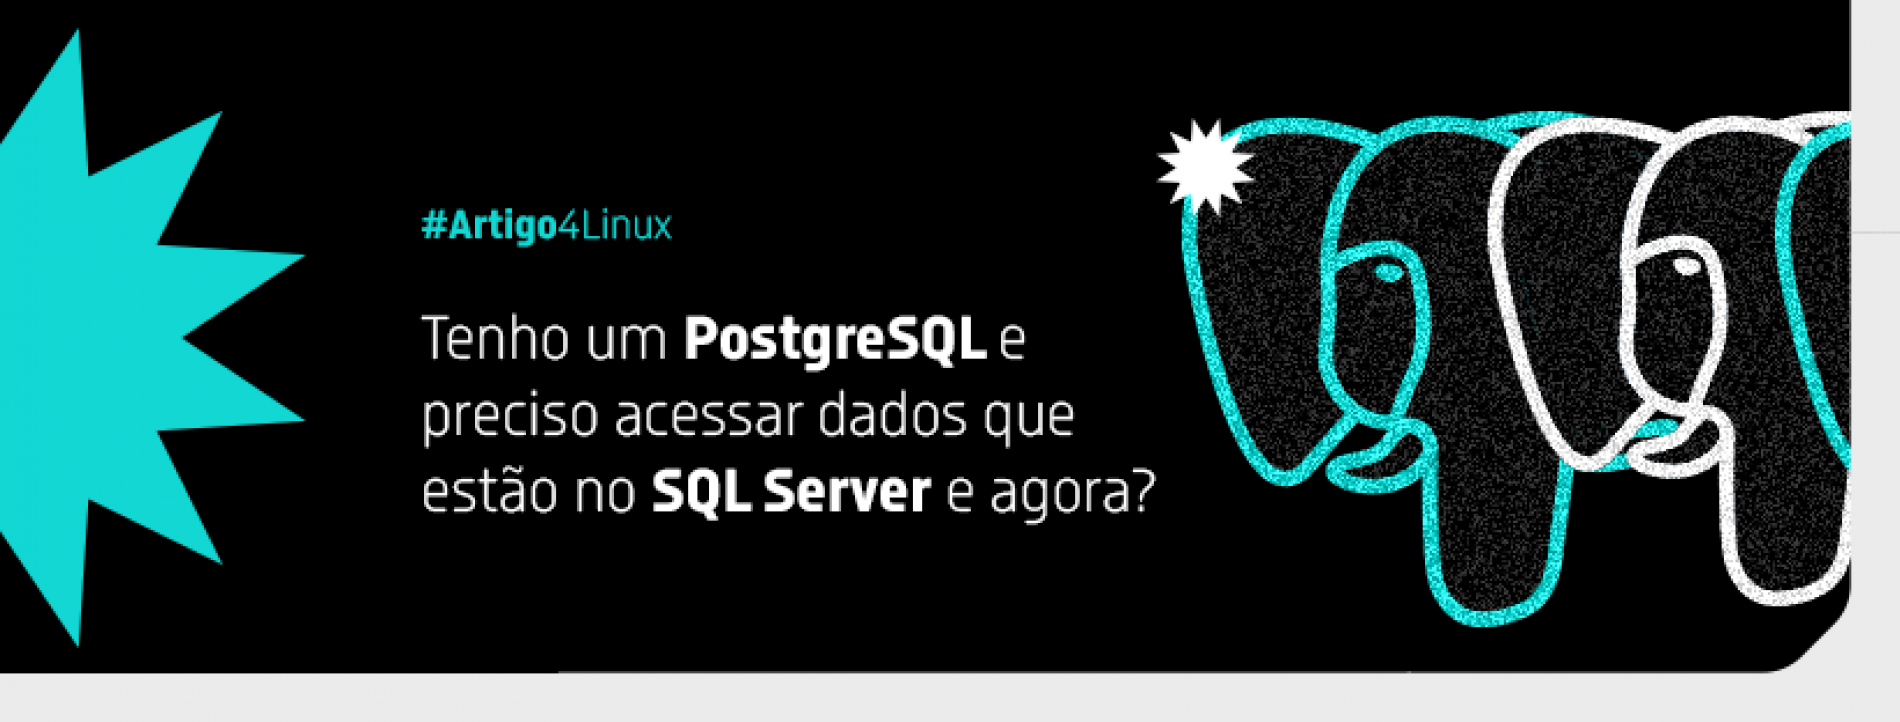 Acesso a dados SQL Server através do PostgreSQL: um guia prático